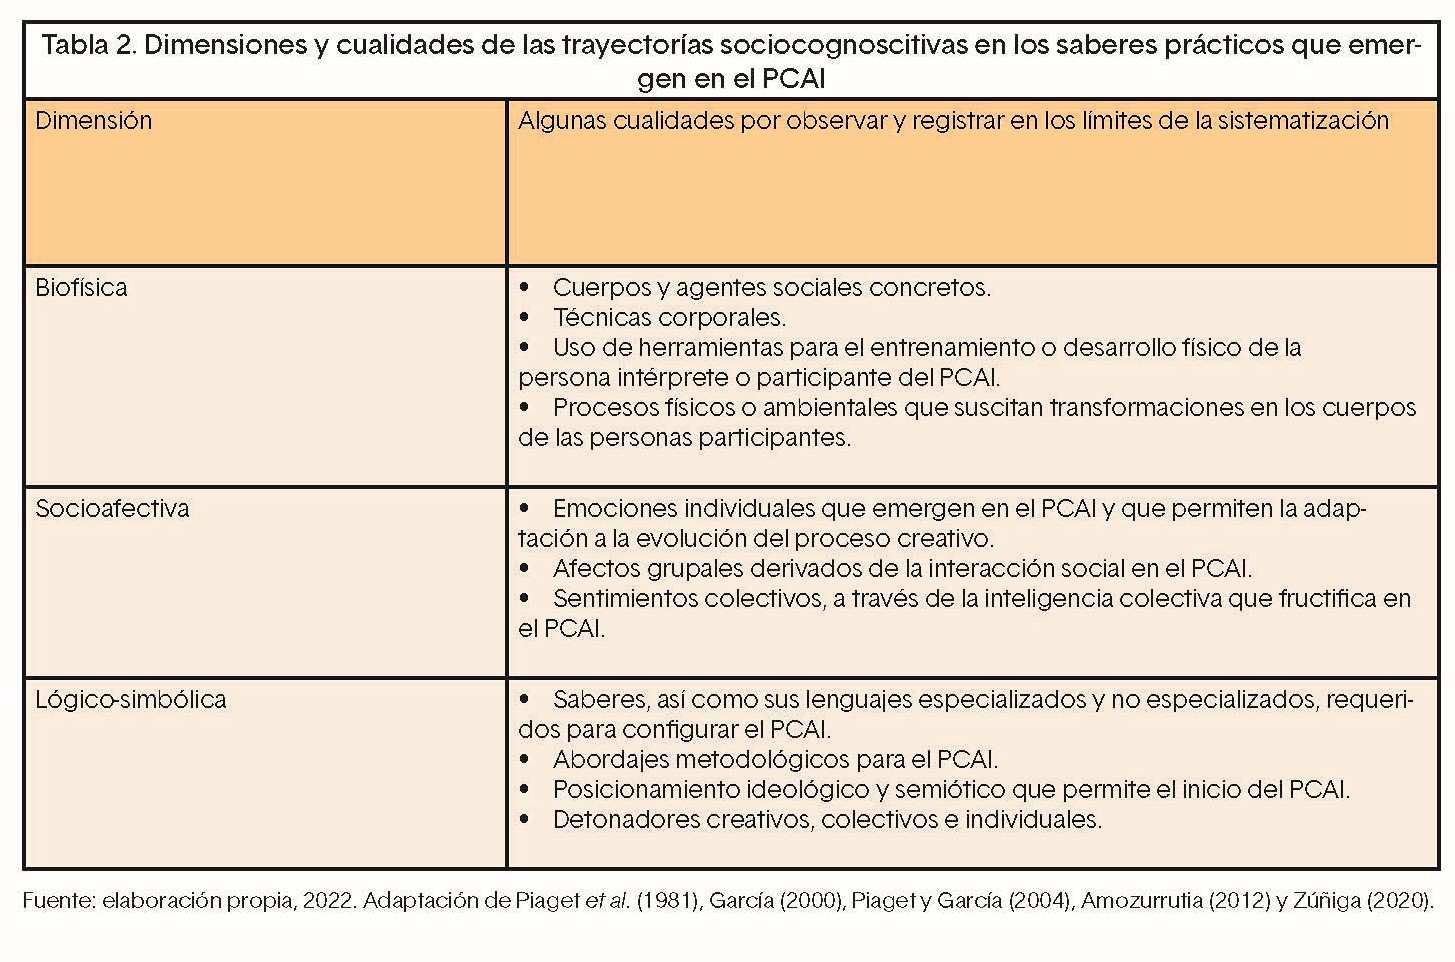 Fuente: elaboración propia, 2022. Adaptación de Piaget et al. (1981), García (2000), Piaget y García (2004), Amozurrutia (2012) y Zúñiga (2020).